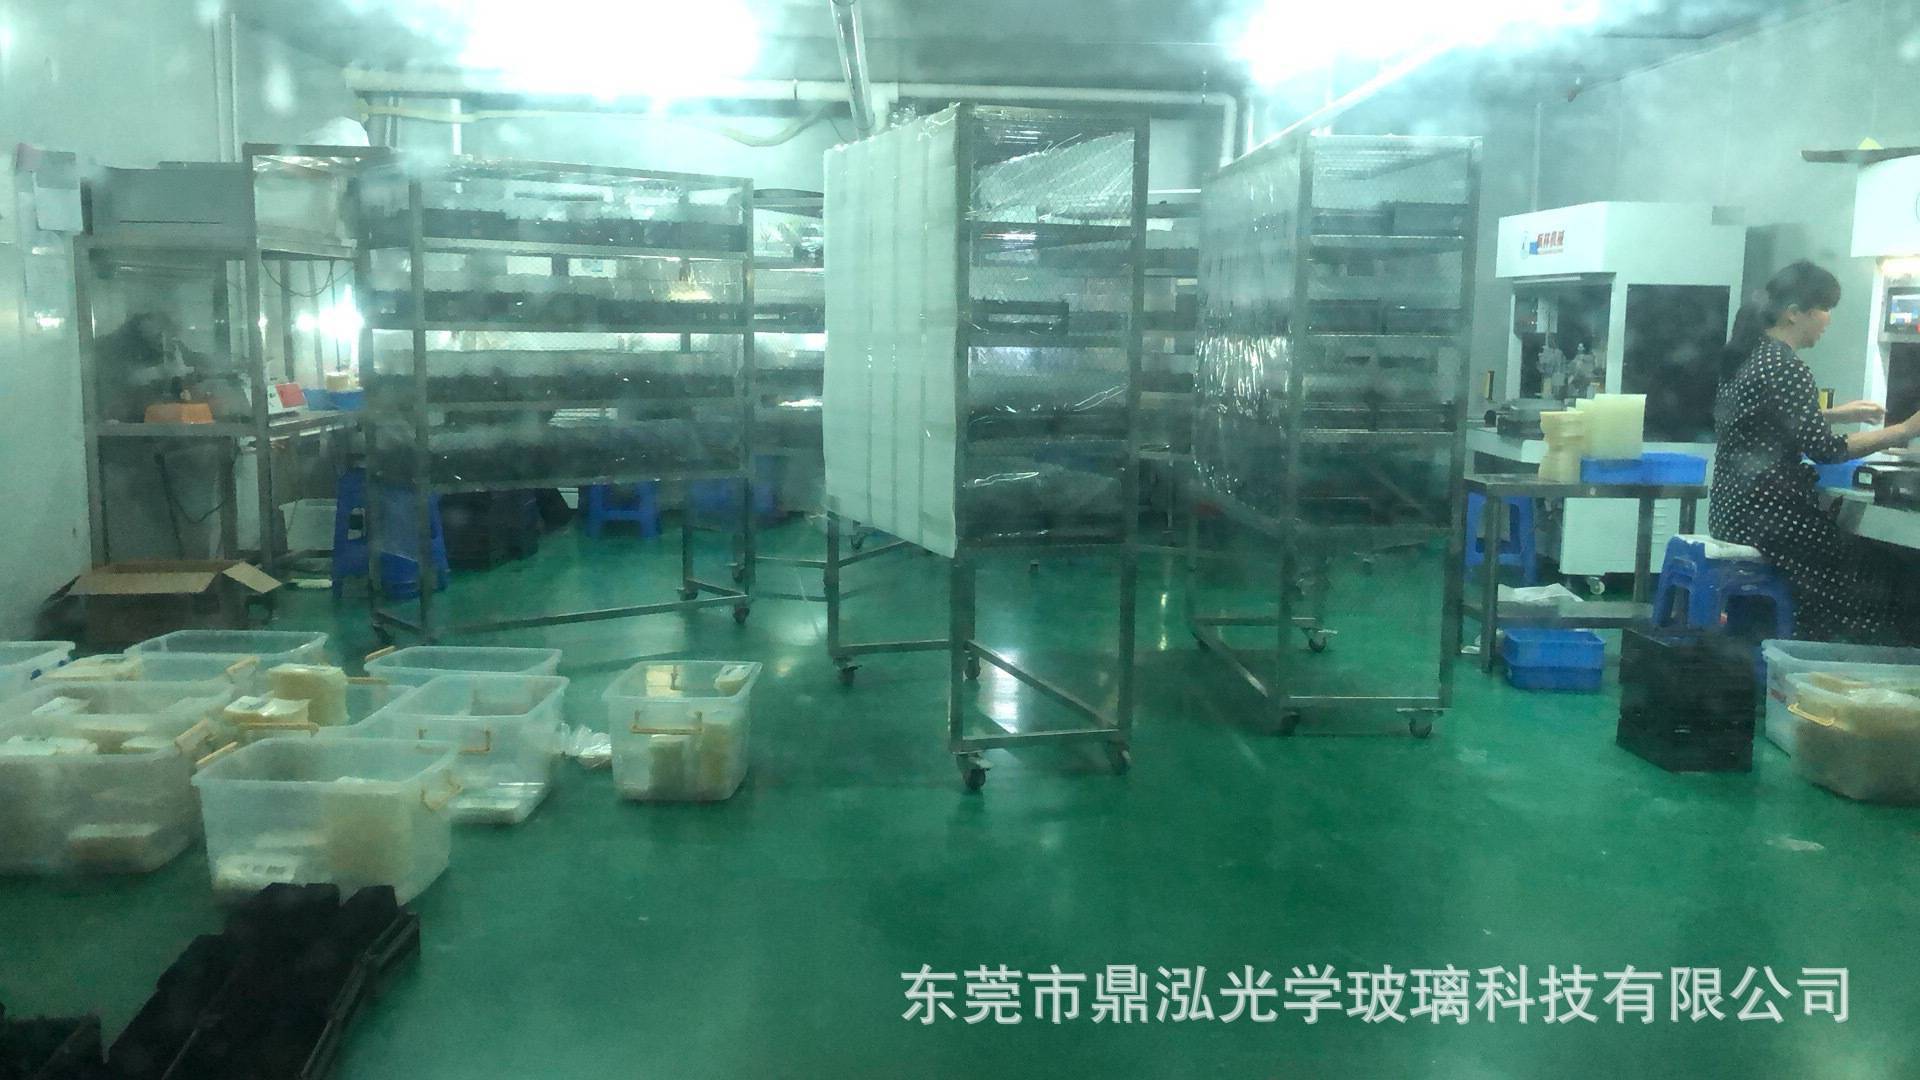   Dongguan Dinghong Optical Glass Technology Co., Ltd